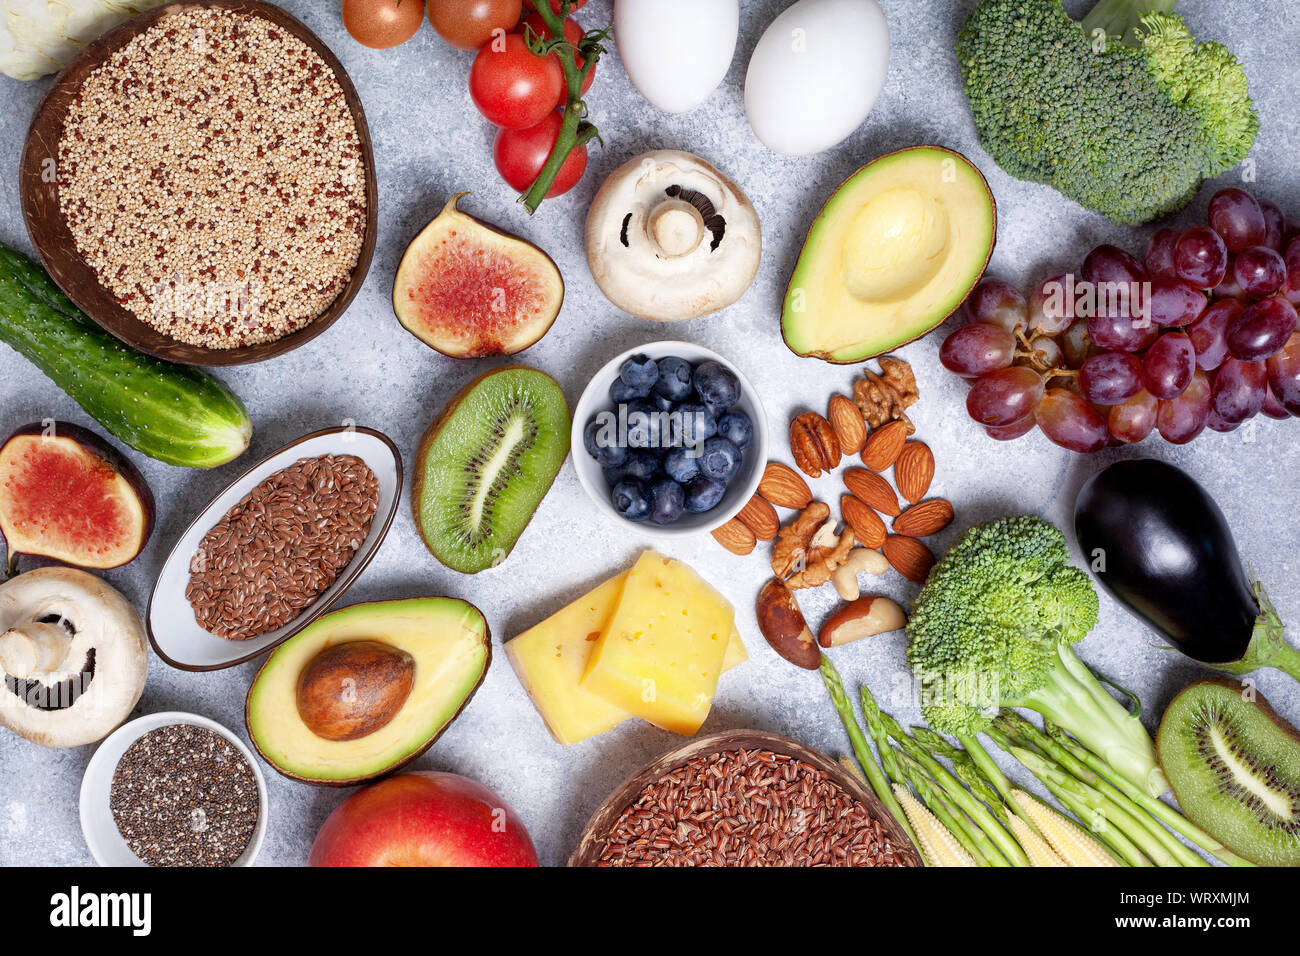 Dieta vegetariana. ingredienti per un pasto sano: ortaggi, frutti di bosco, cereali, noci, uova, formaggio. vista superiore Foto Stock